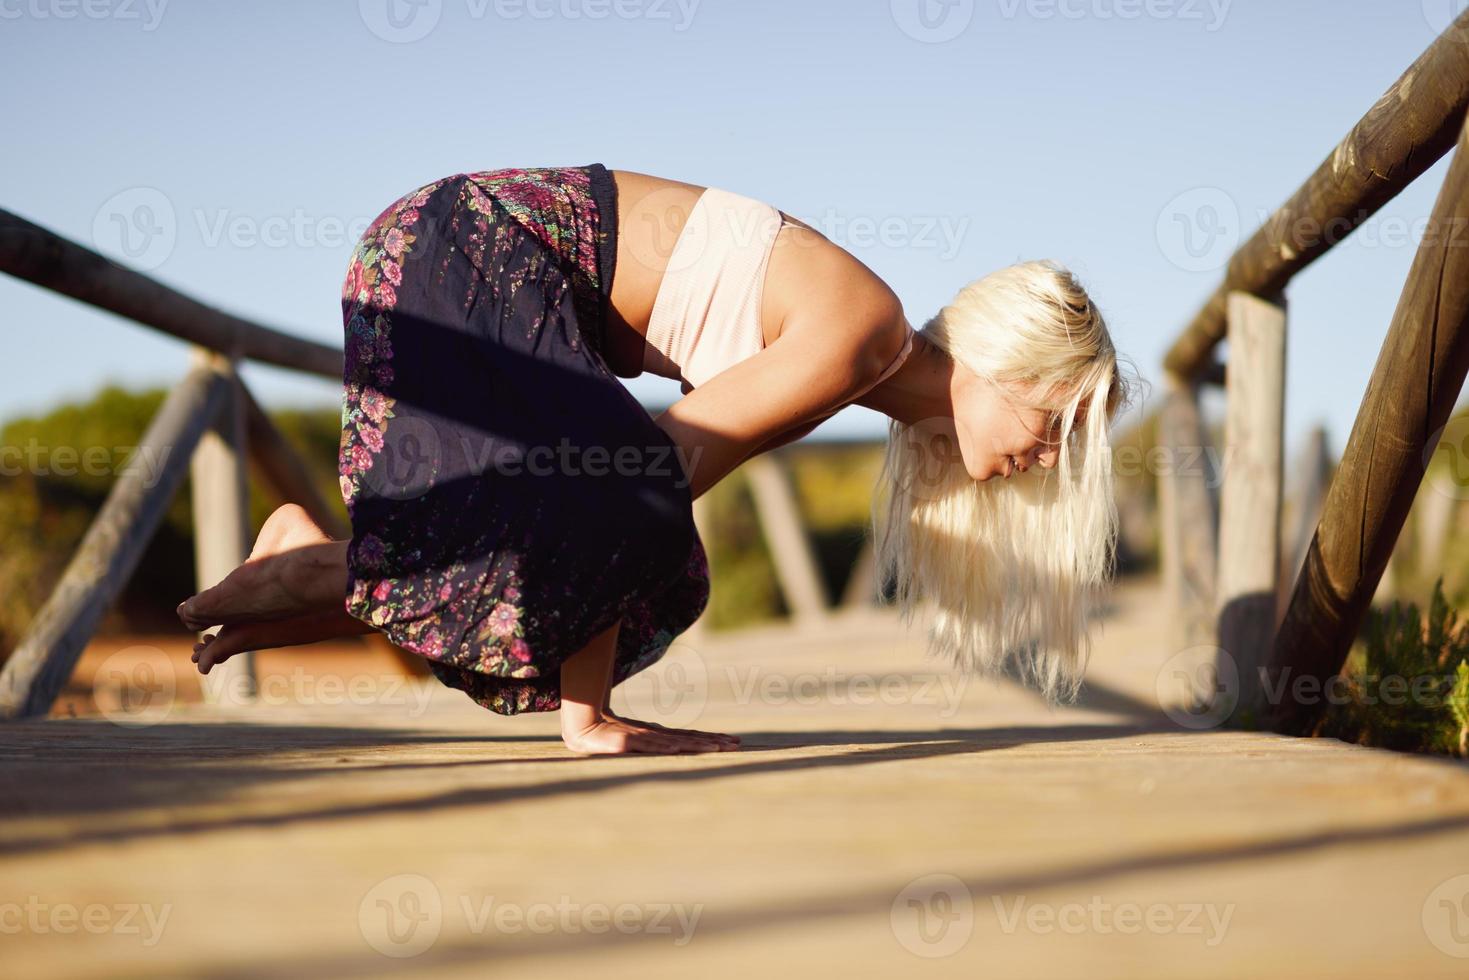 mulher caucasiana, praticando ioga na ponte de madeira. foto